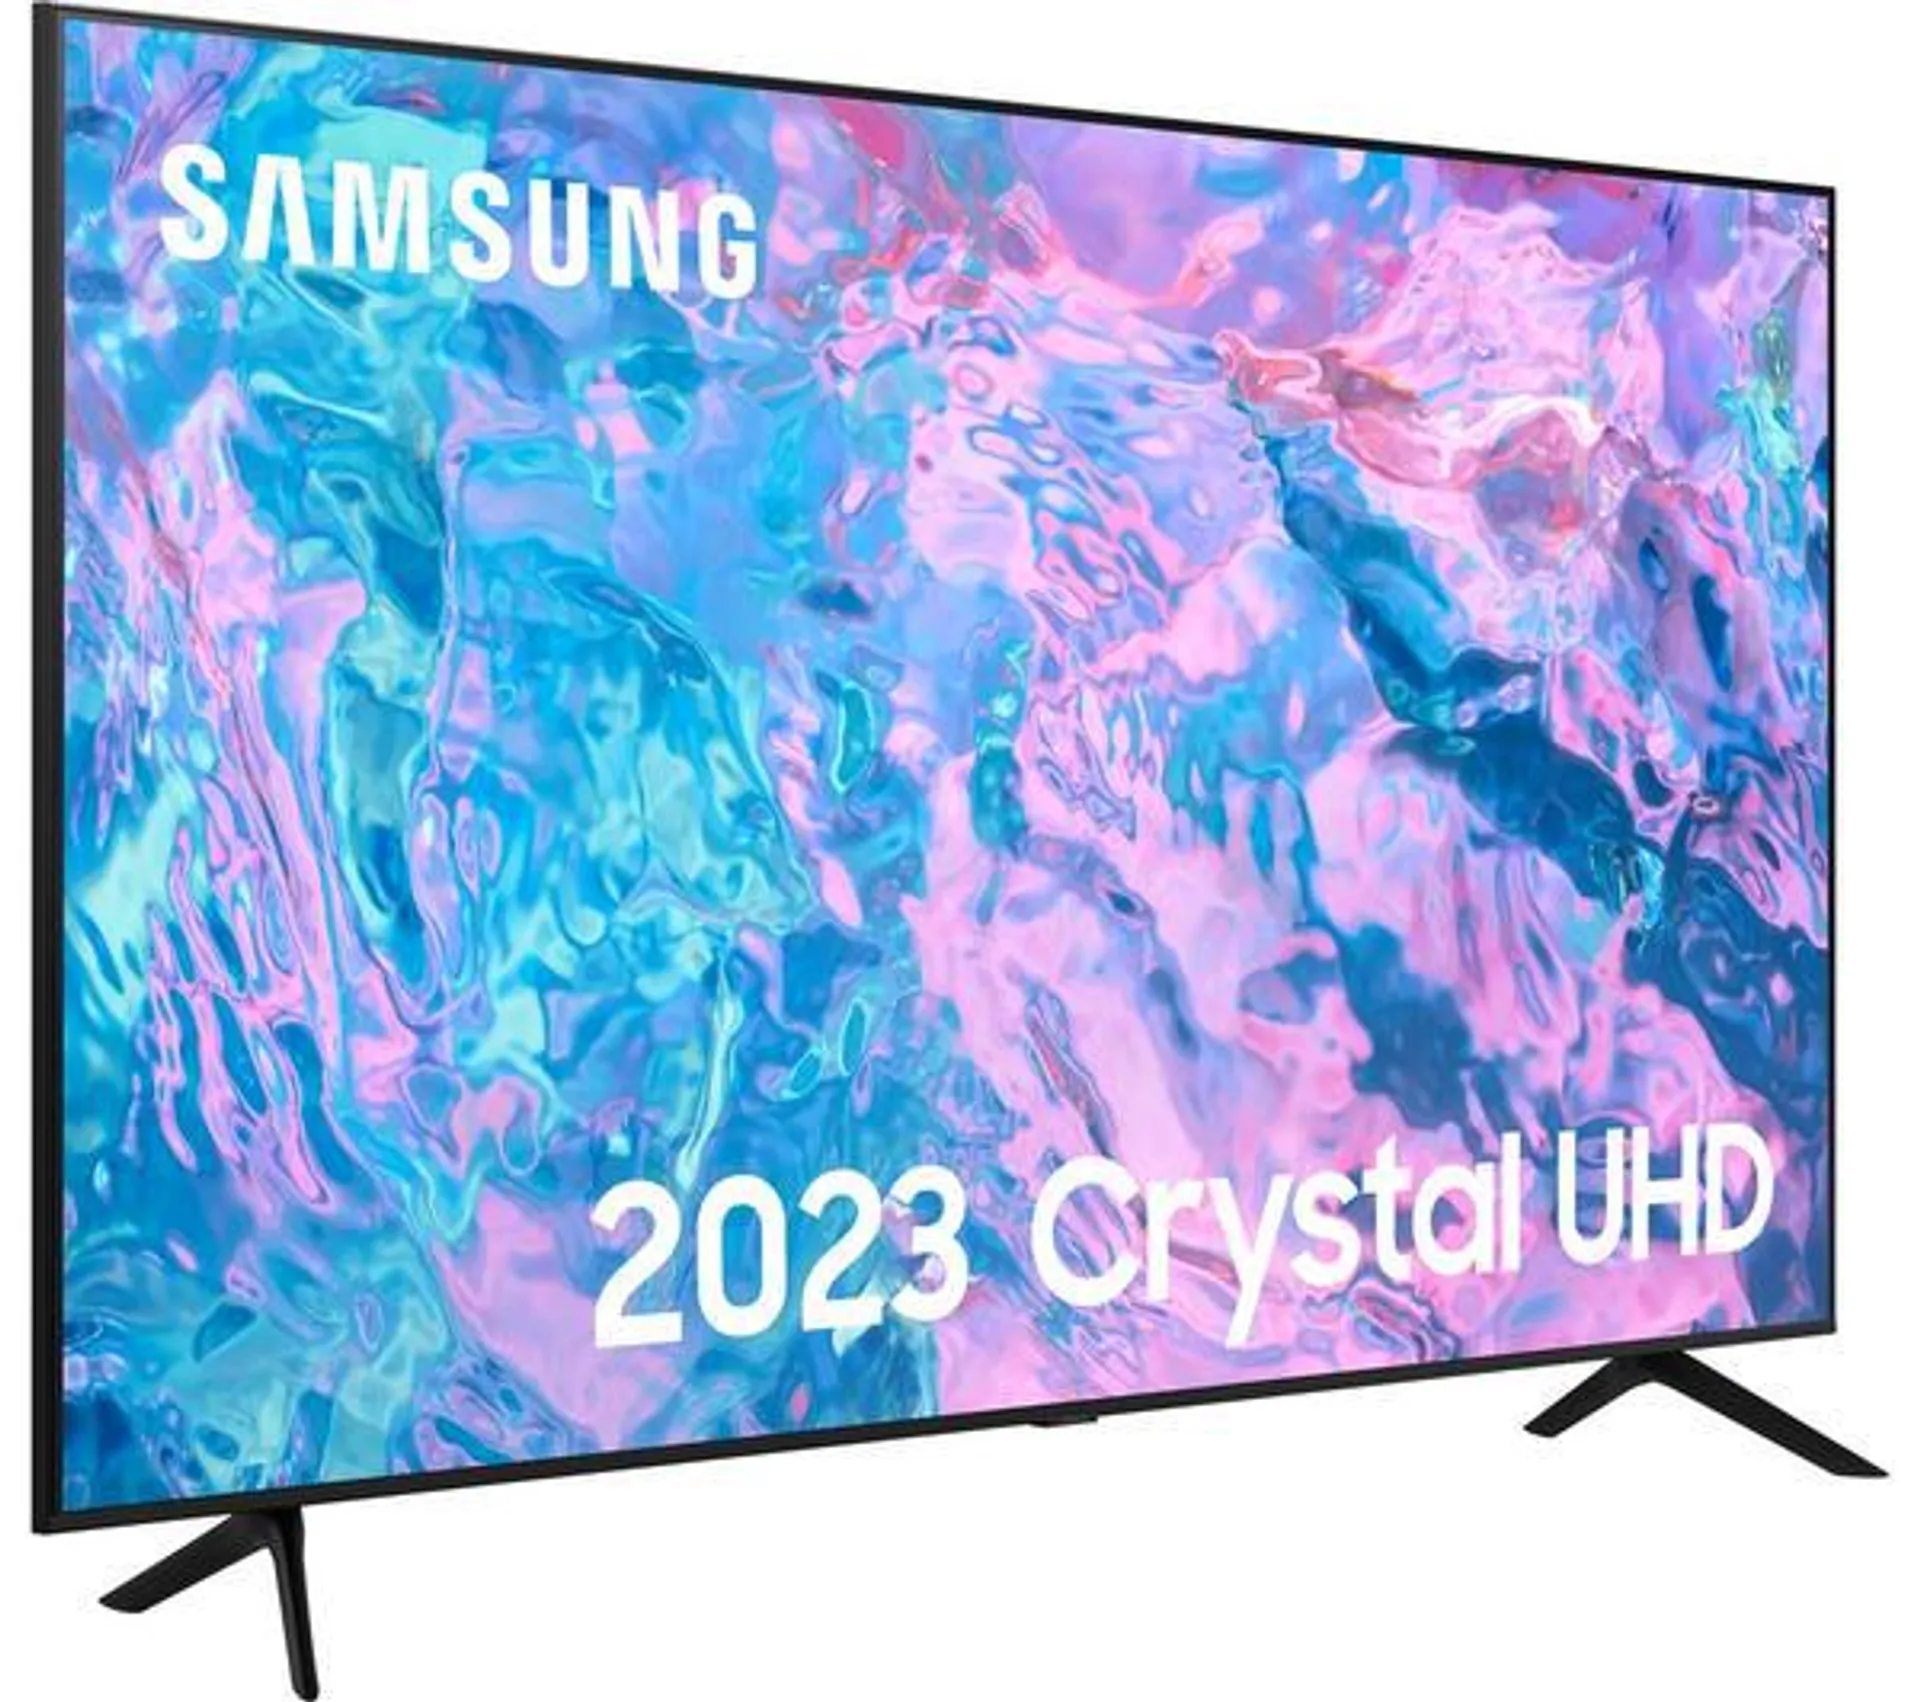 SAMSUNG CU7100 65 inch Smart 4K Ultra HD HDR LED TV (2023) - UE65CU7100